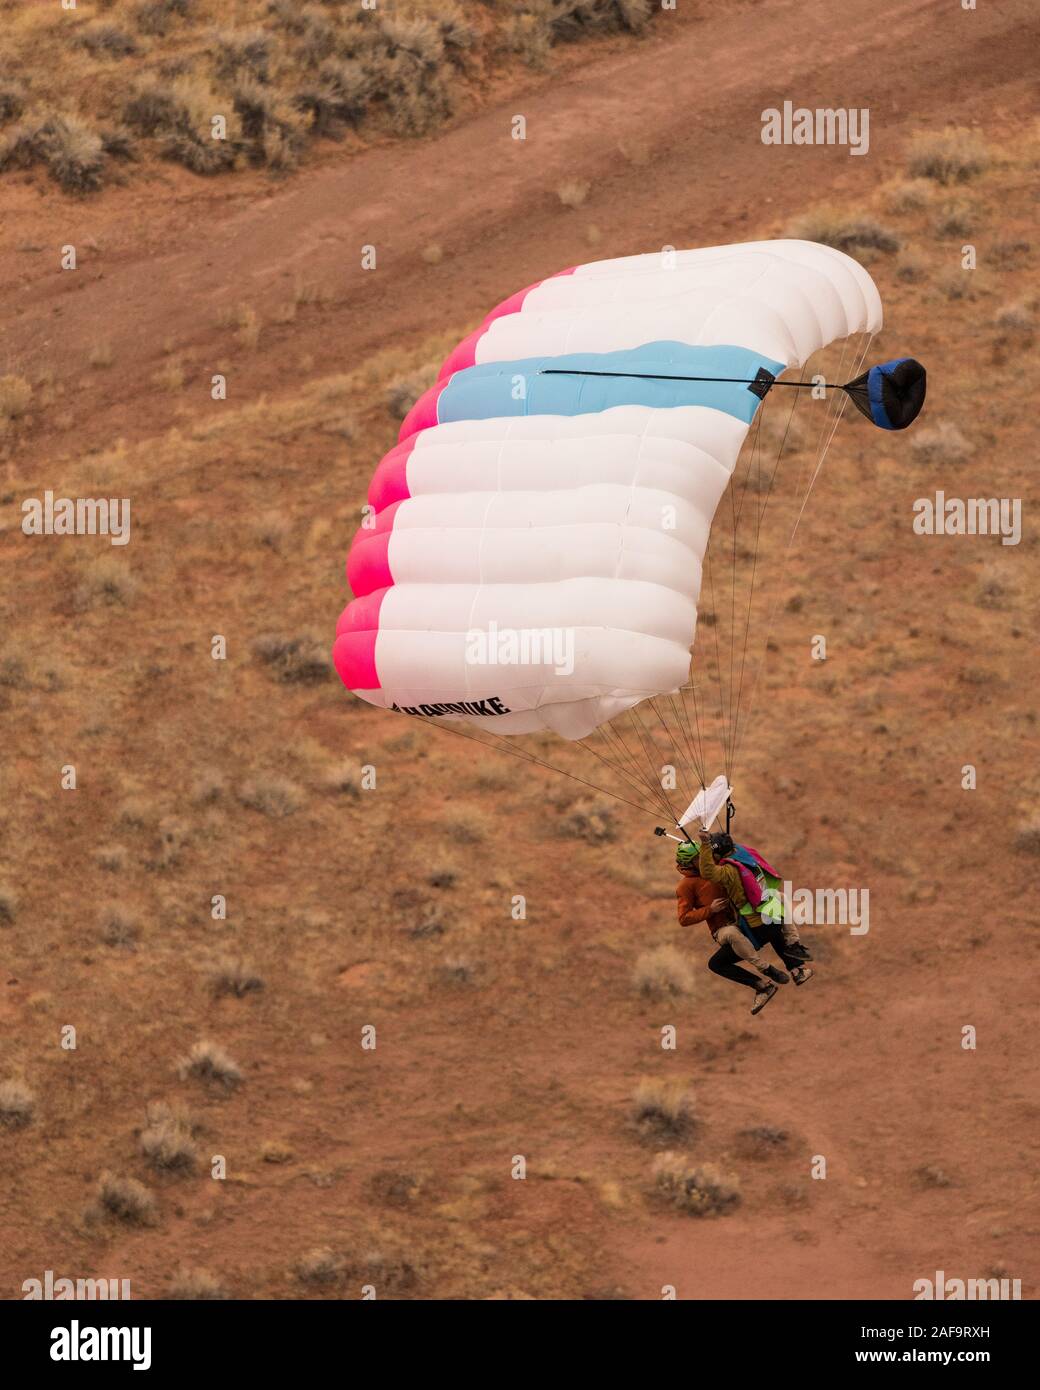 Deux cavaliers de base faisant un 'Mr. Bill' saut en tandem à partir de l'espace Net Mothership 950 pieds au-dessus du plancher de minéral Canyon près de Moab, Utah. Depuis le j Banque D'Images